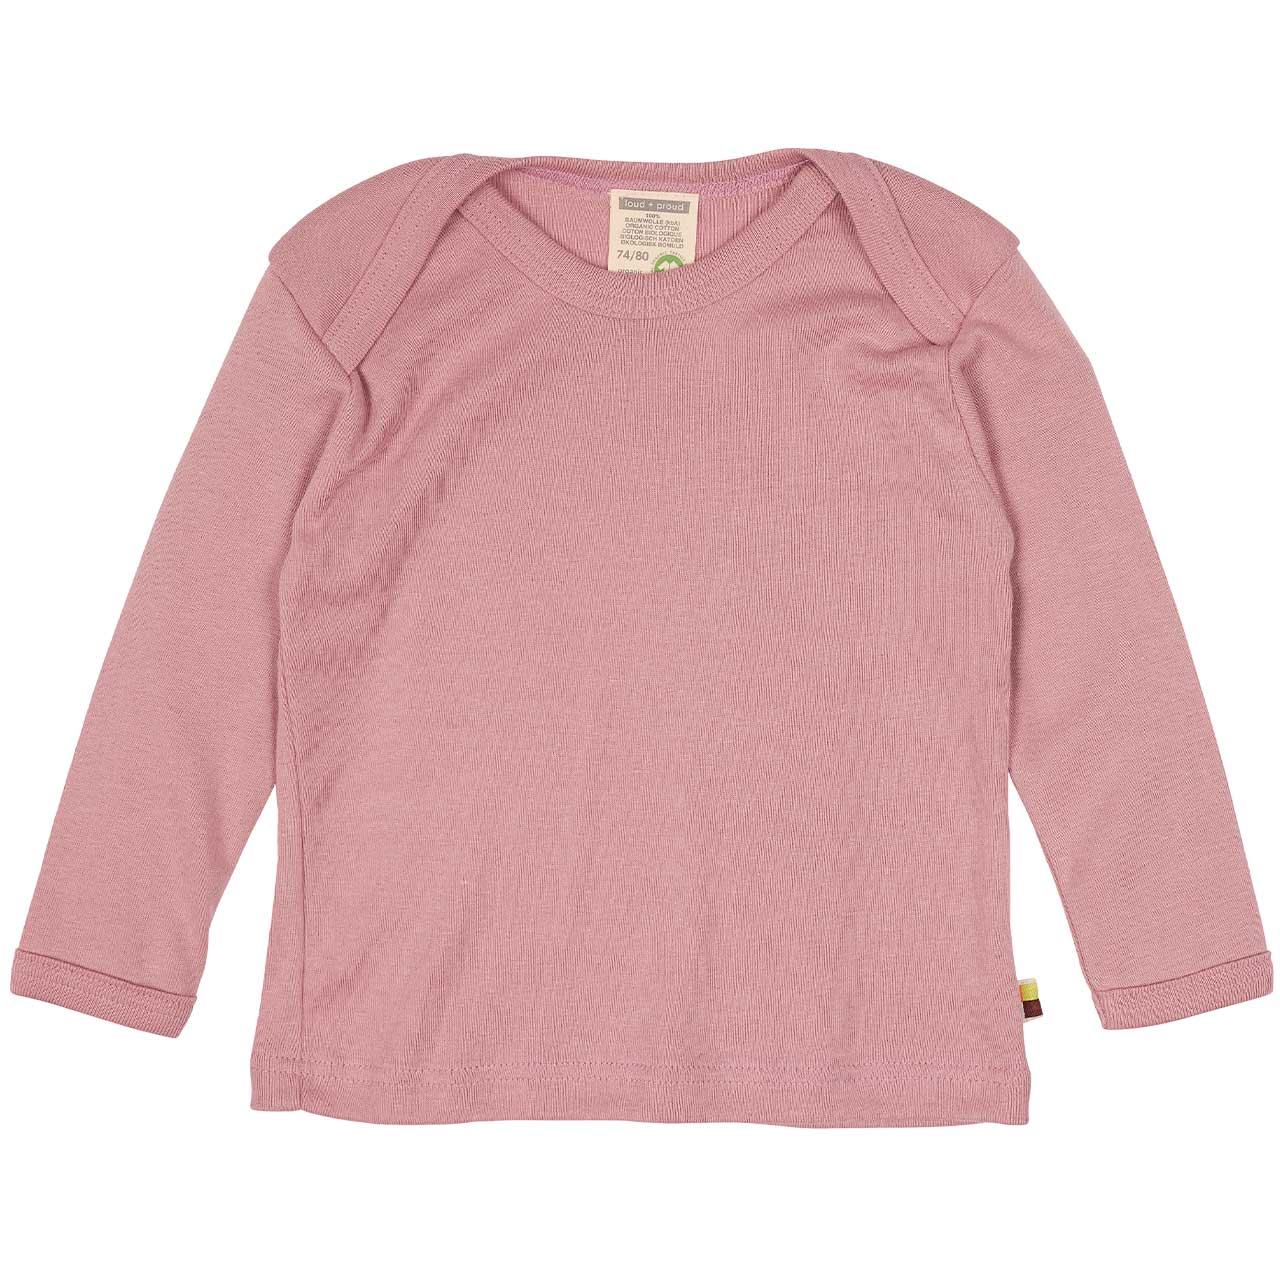 Feinripp Shirt weich und elastisch 100% Baumwolle rosa